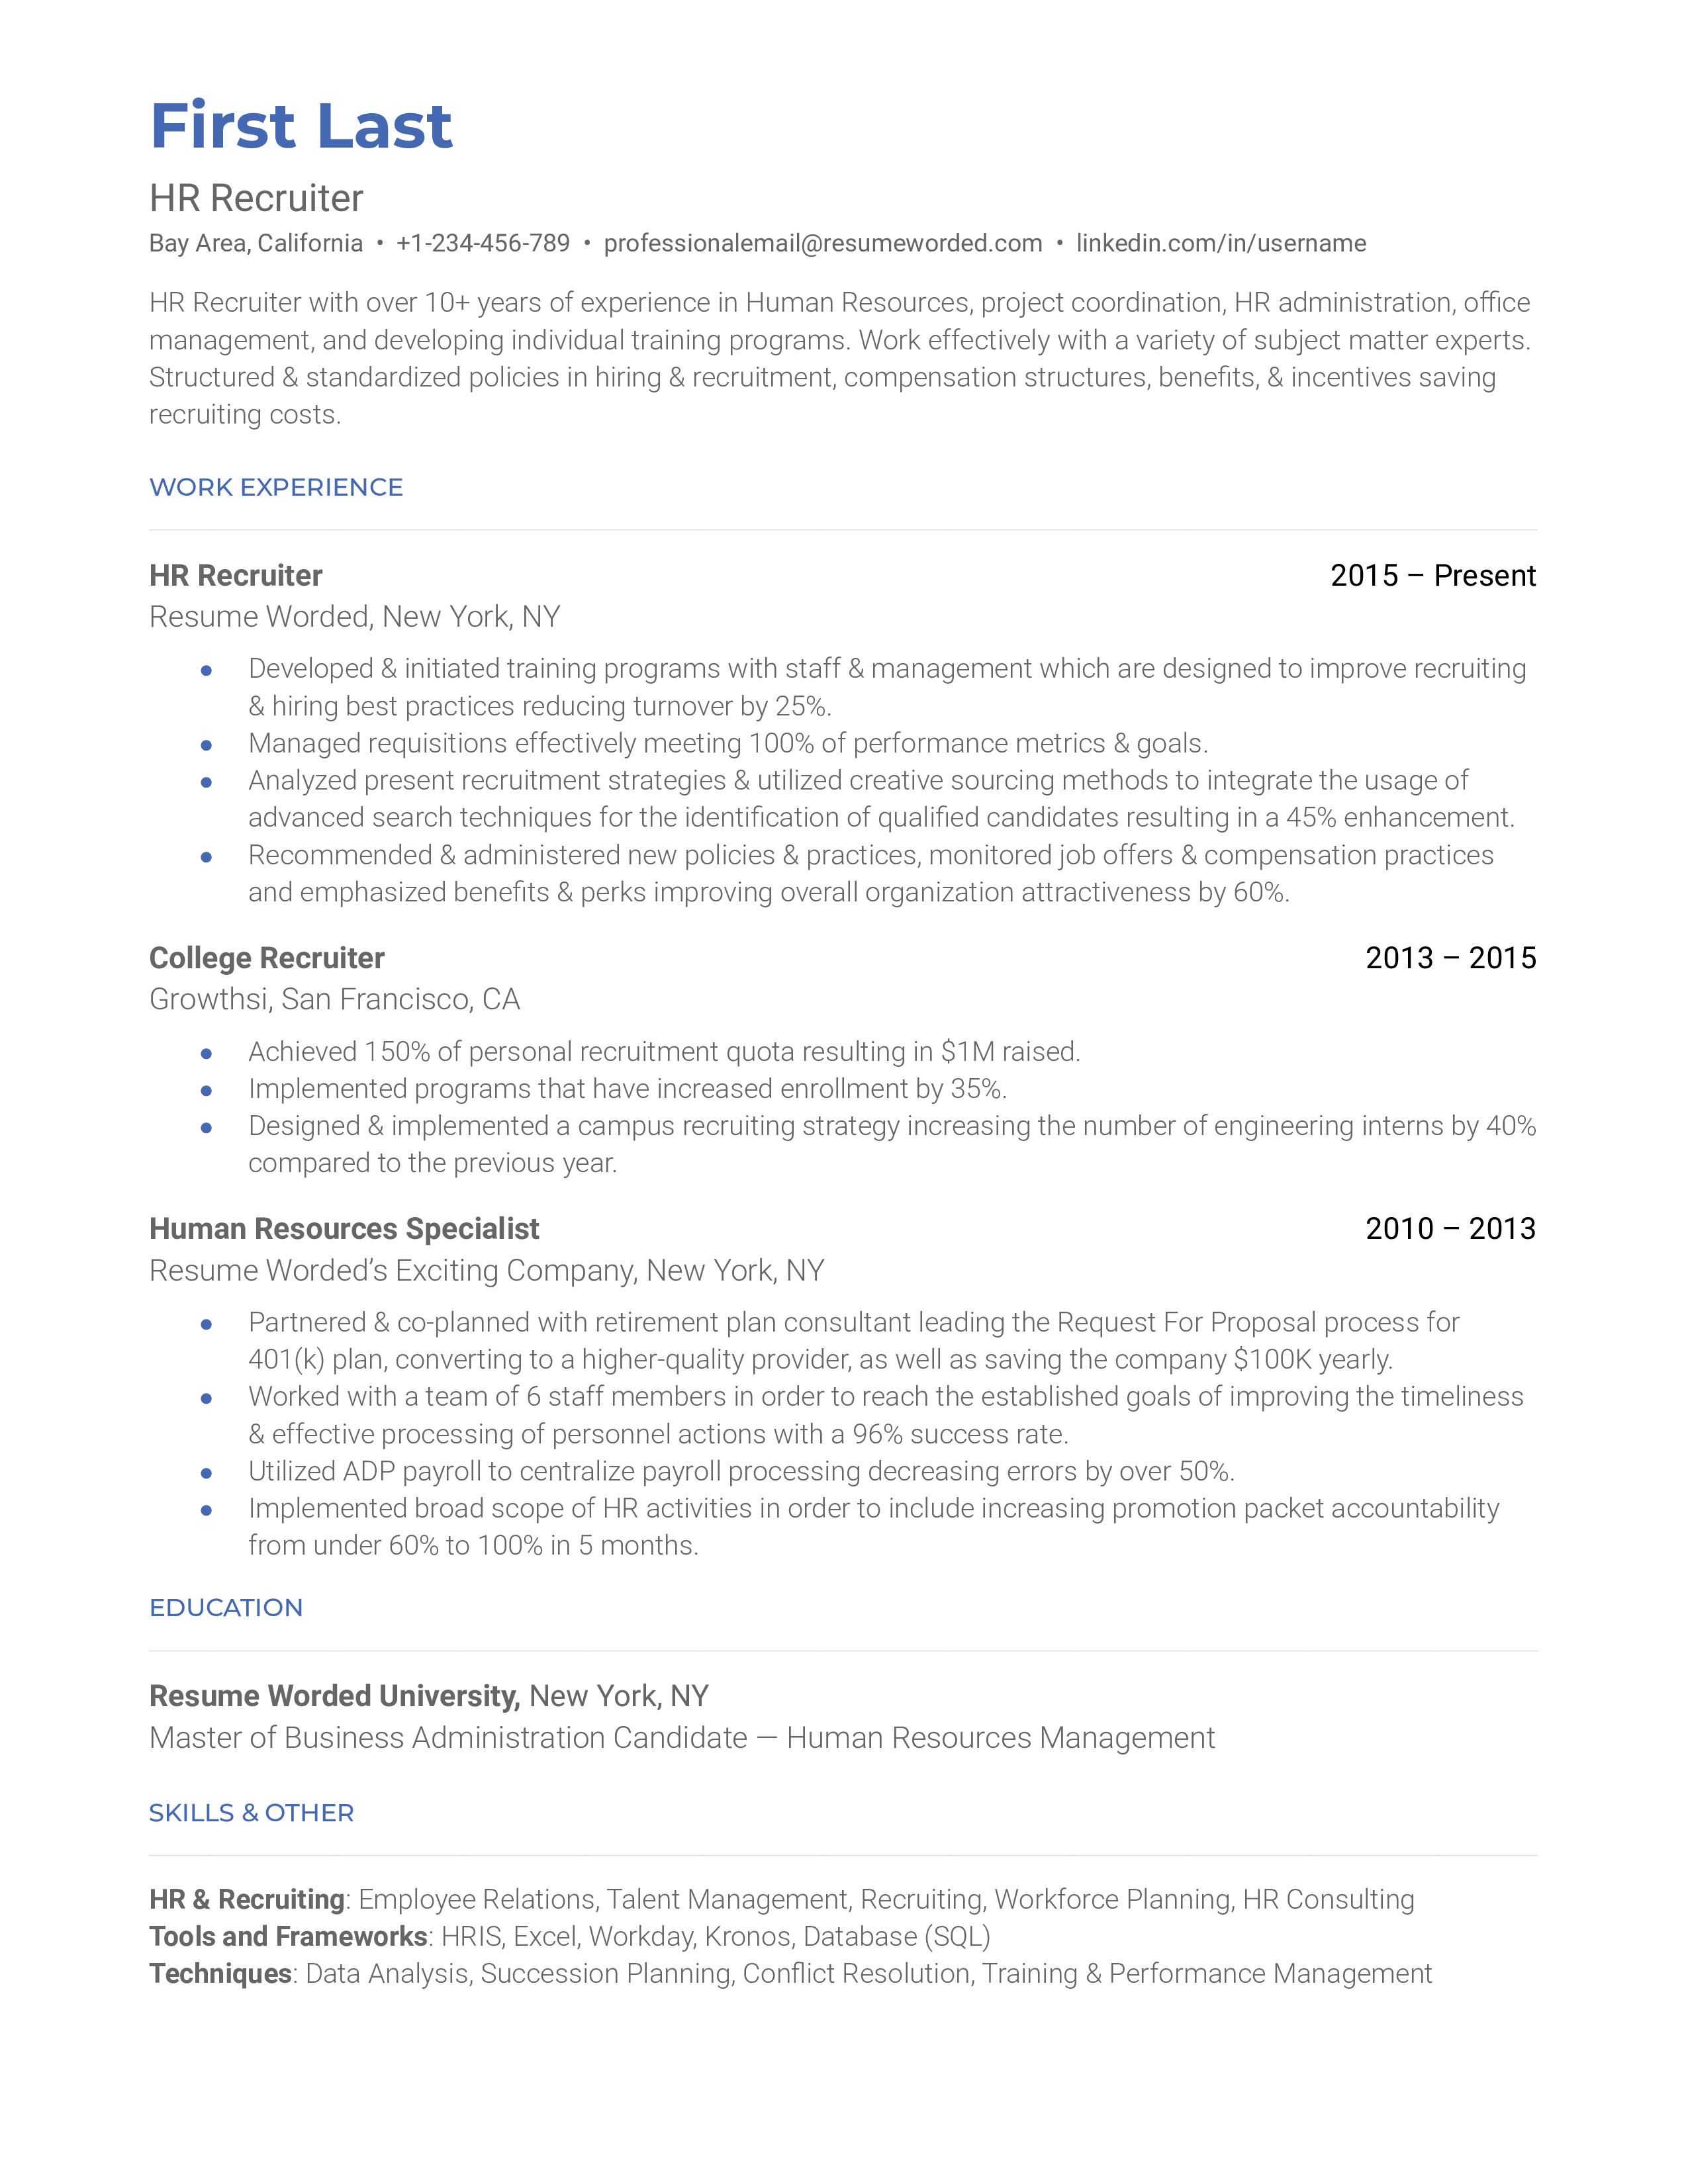 HR Recruiter Resume Sample